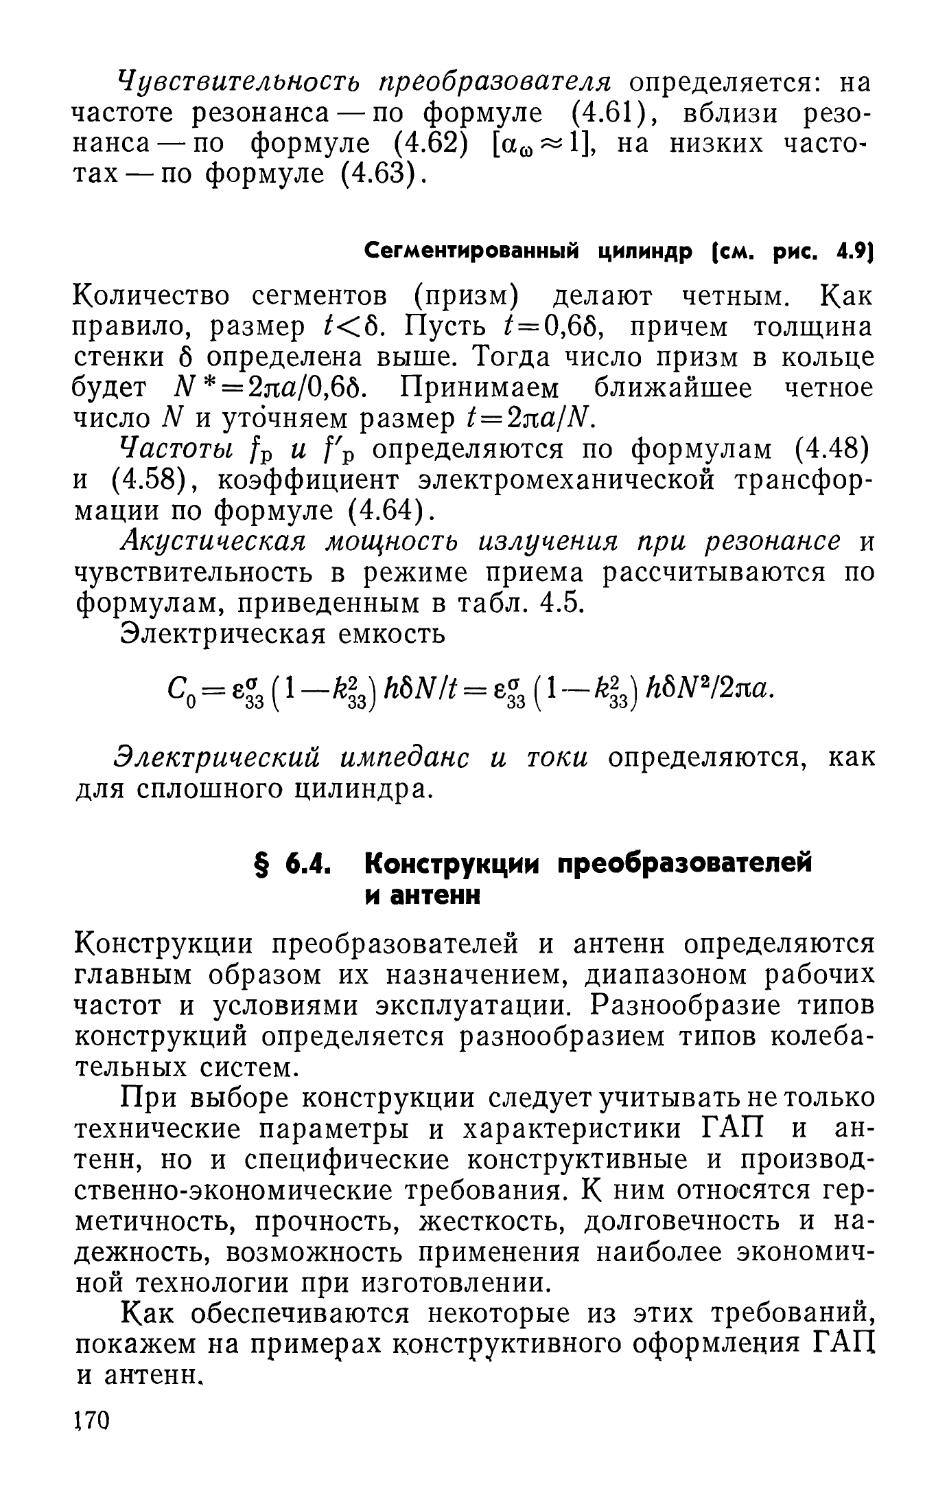 Сегментированный цилиндр
§ 6.4. Конструкции преобразователей и антенн